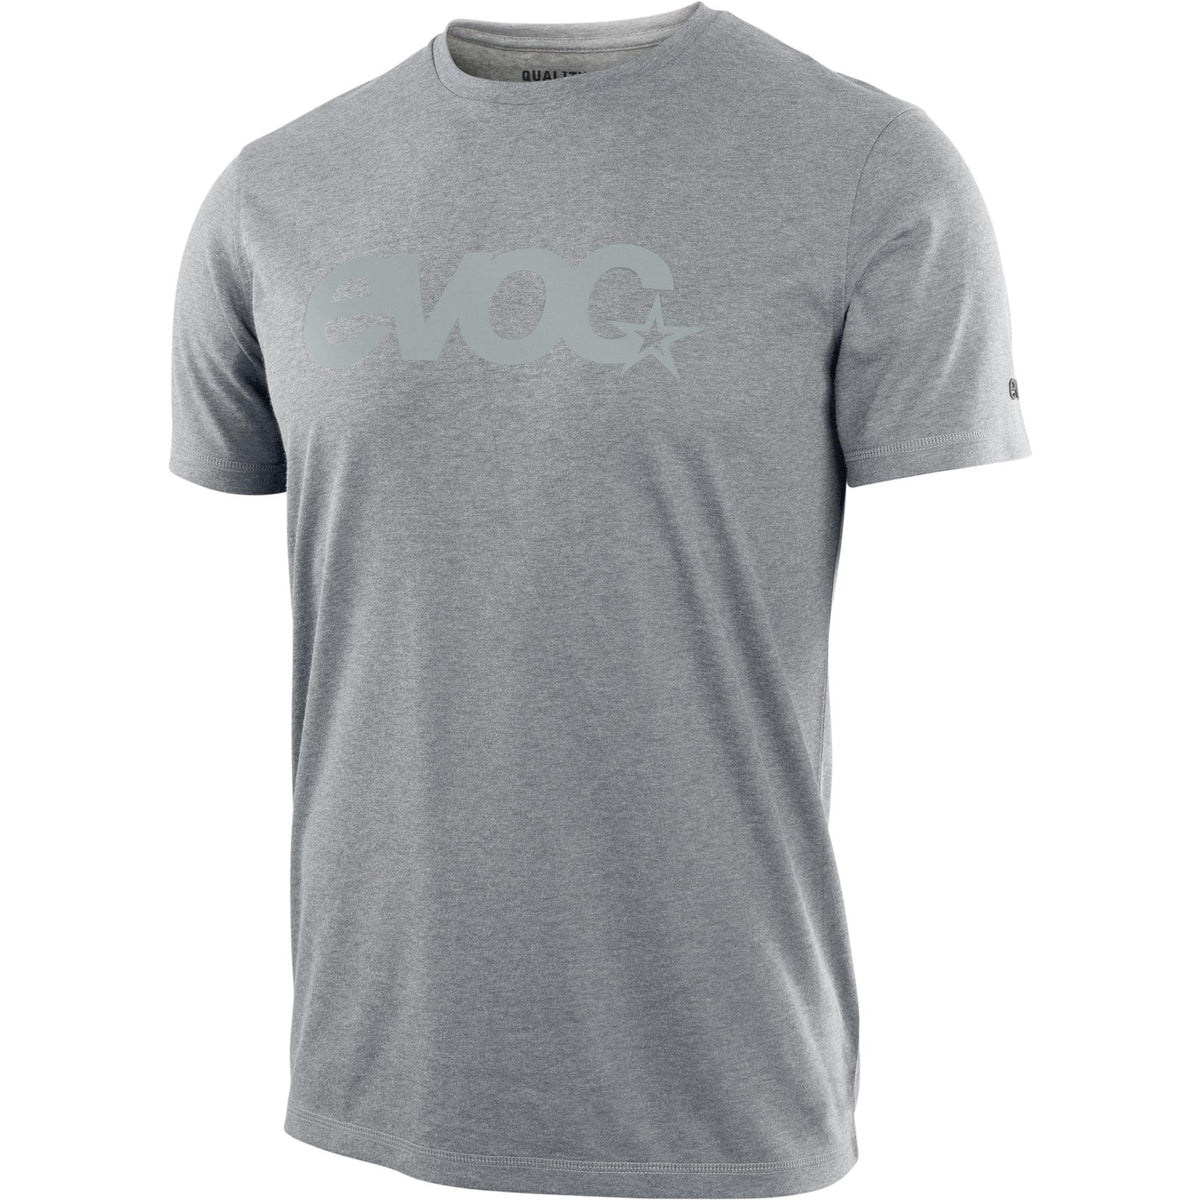 Evoc Men's T-Shirt Dry Stone L